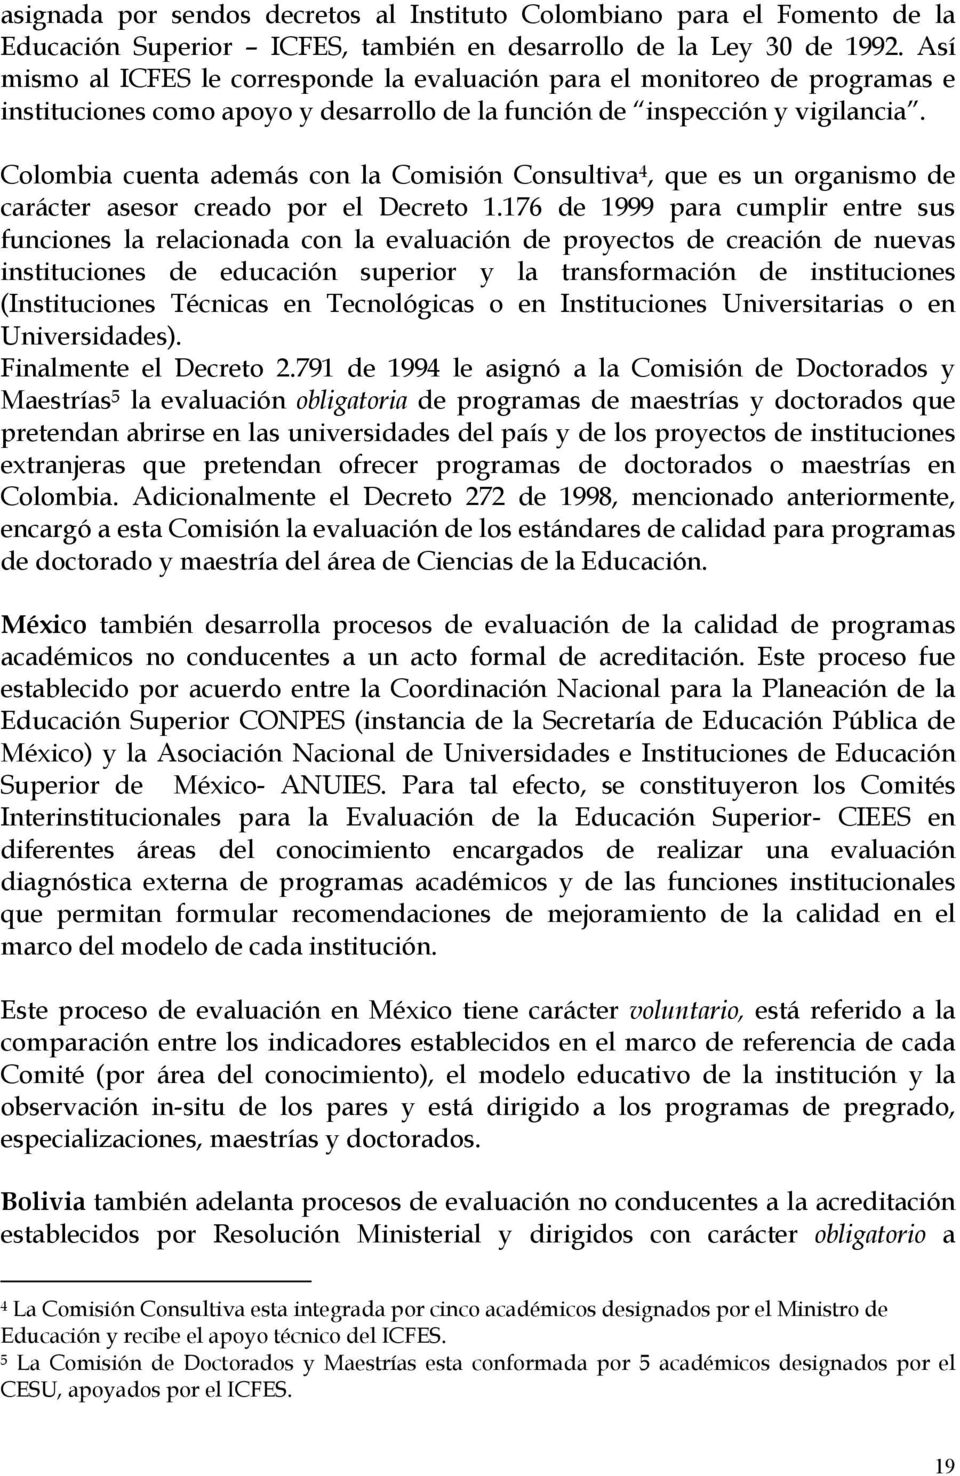 Colombia cuenta además con la Comisión Consultiva 4, que es un organismo de carácter asesor creado por el Decreto 1.